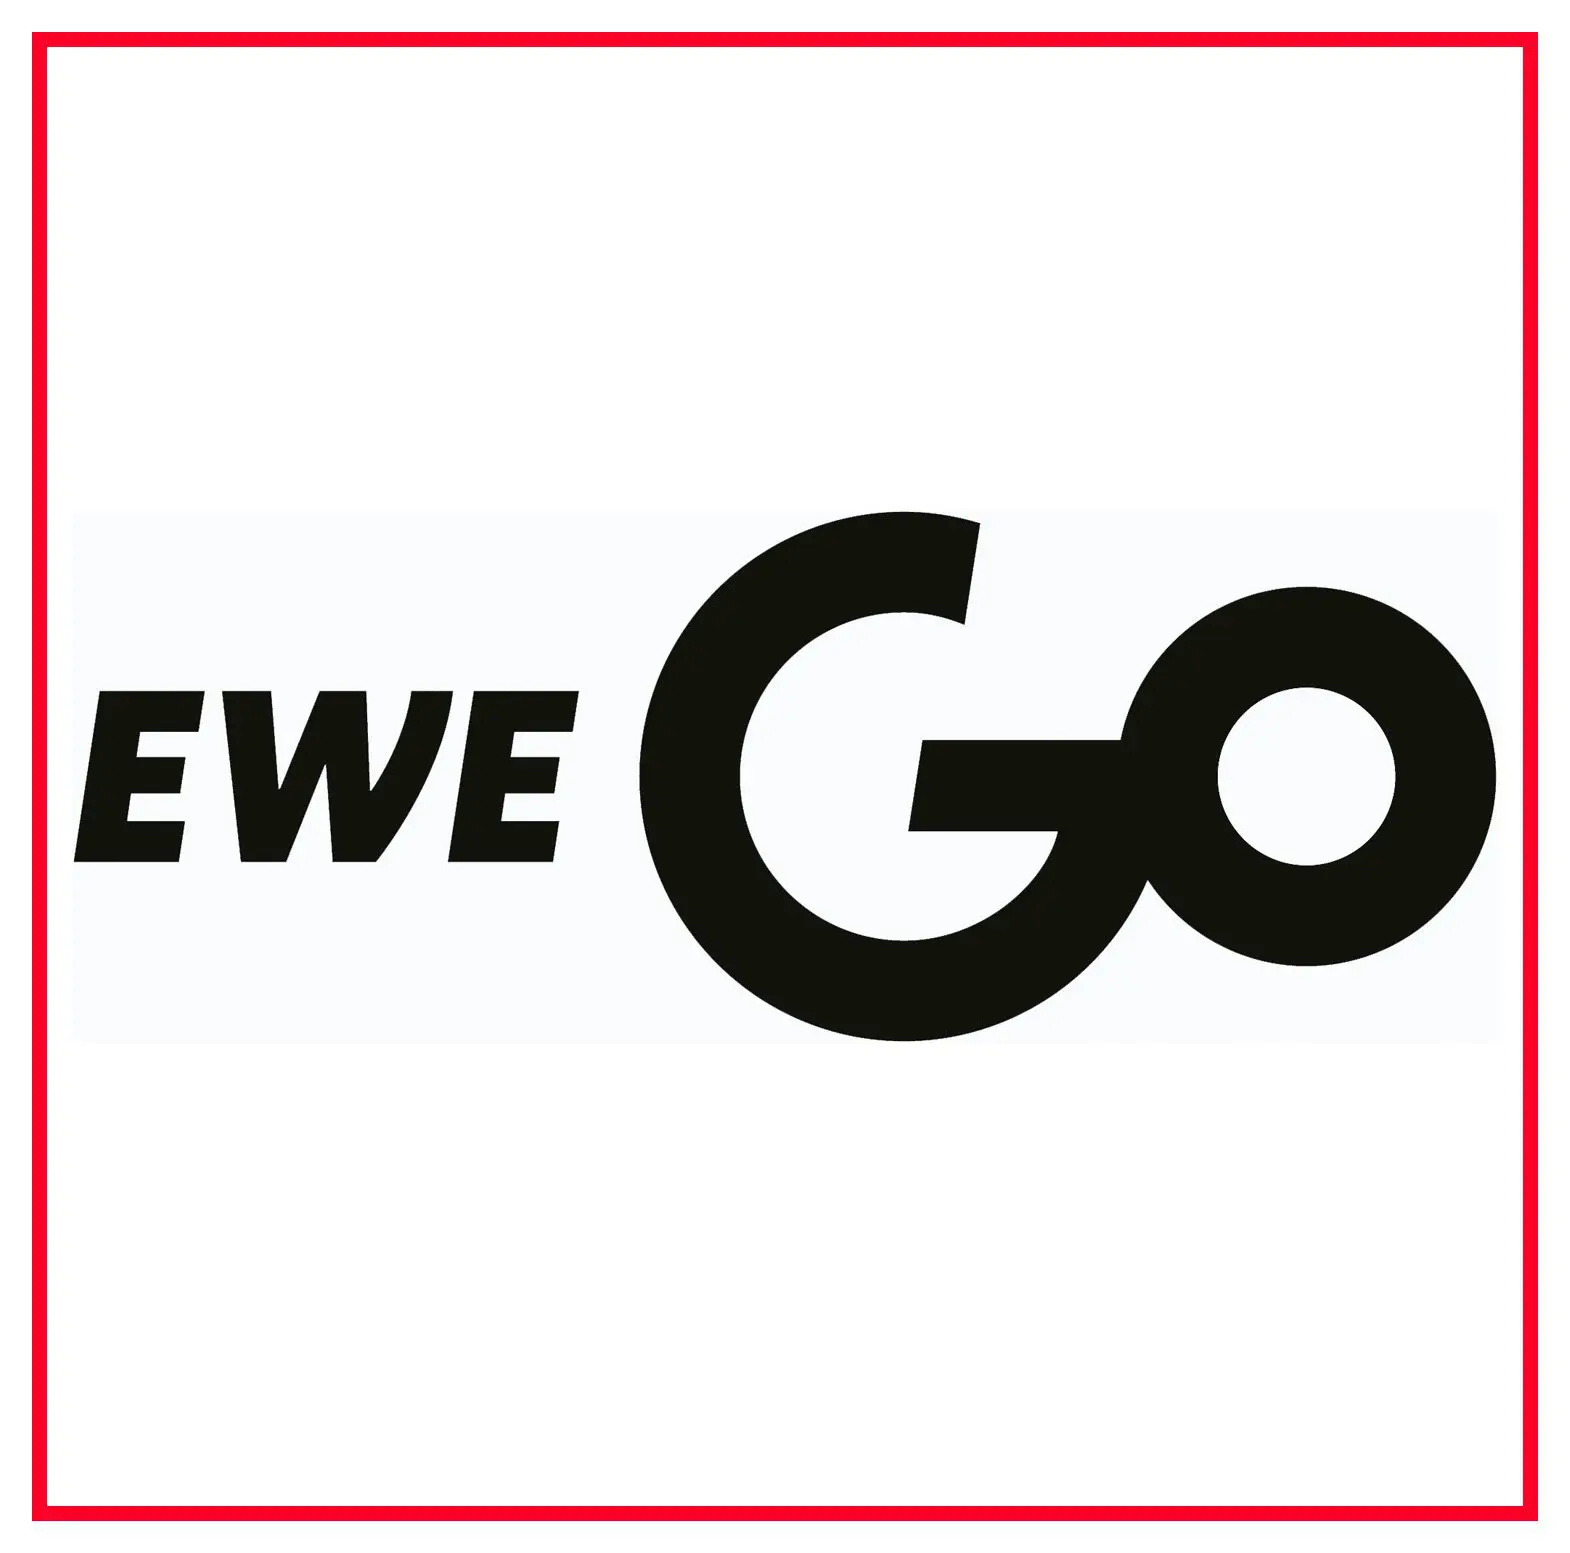 Logo EWE GO